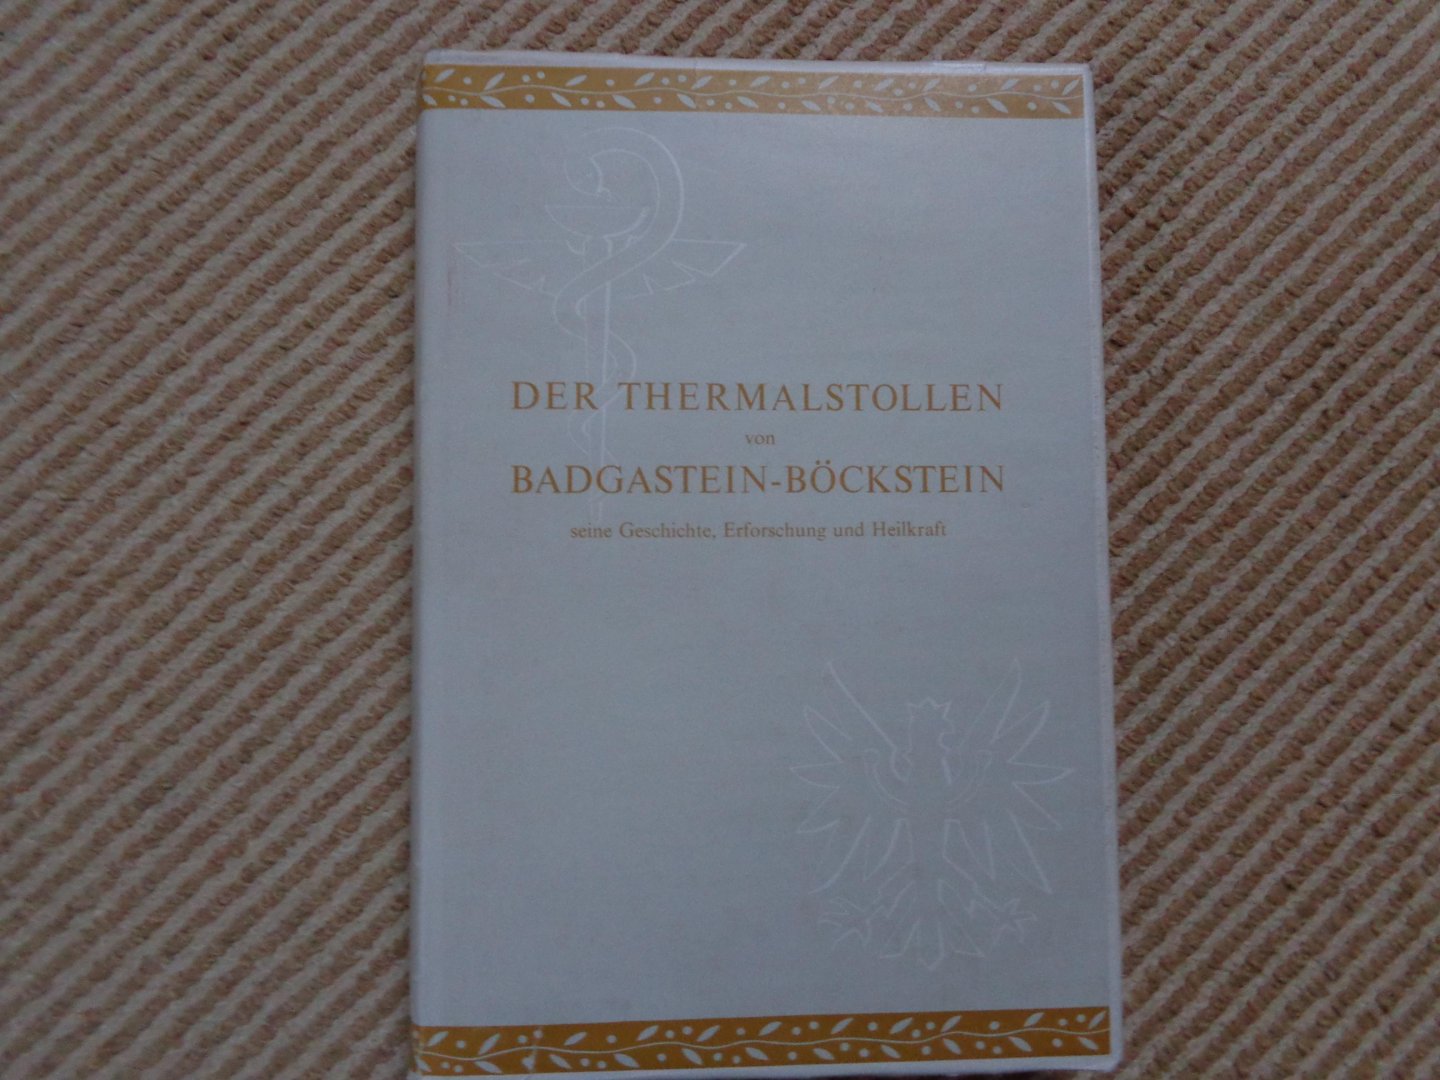 Scheminzky, prof. dr. F. - Der Thermalstollen von Badgastein-Böckstein